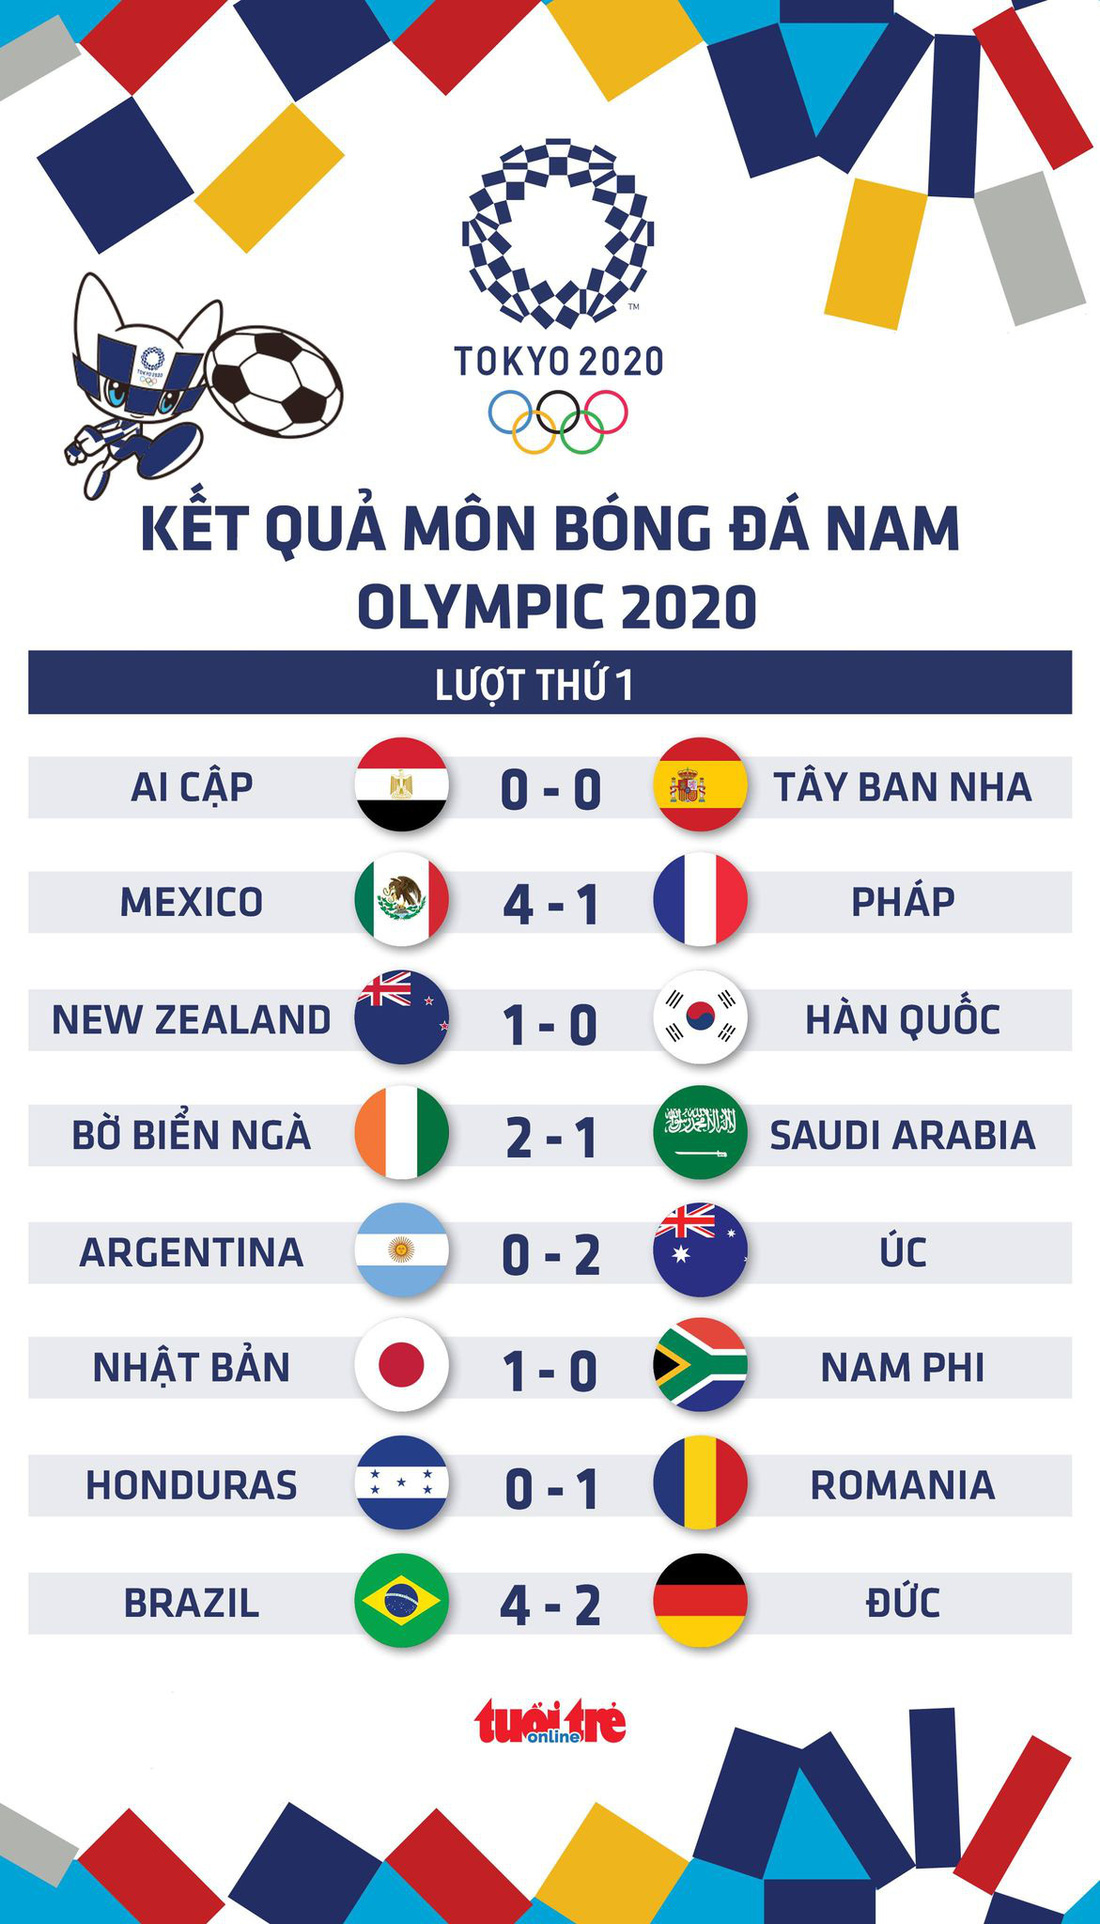 Kết quả bóng đá nam Olympic 2020: Pháp, Argentina thua, Tây Ban Nha gây thất vọng - Ảnh 1.